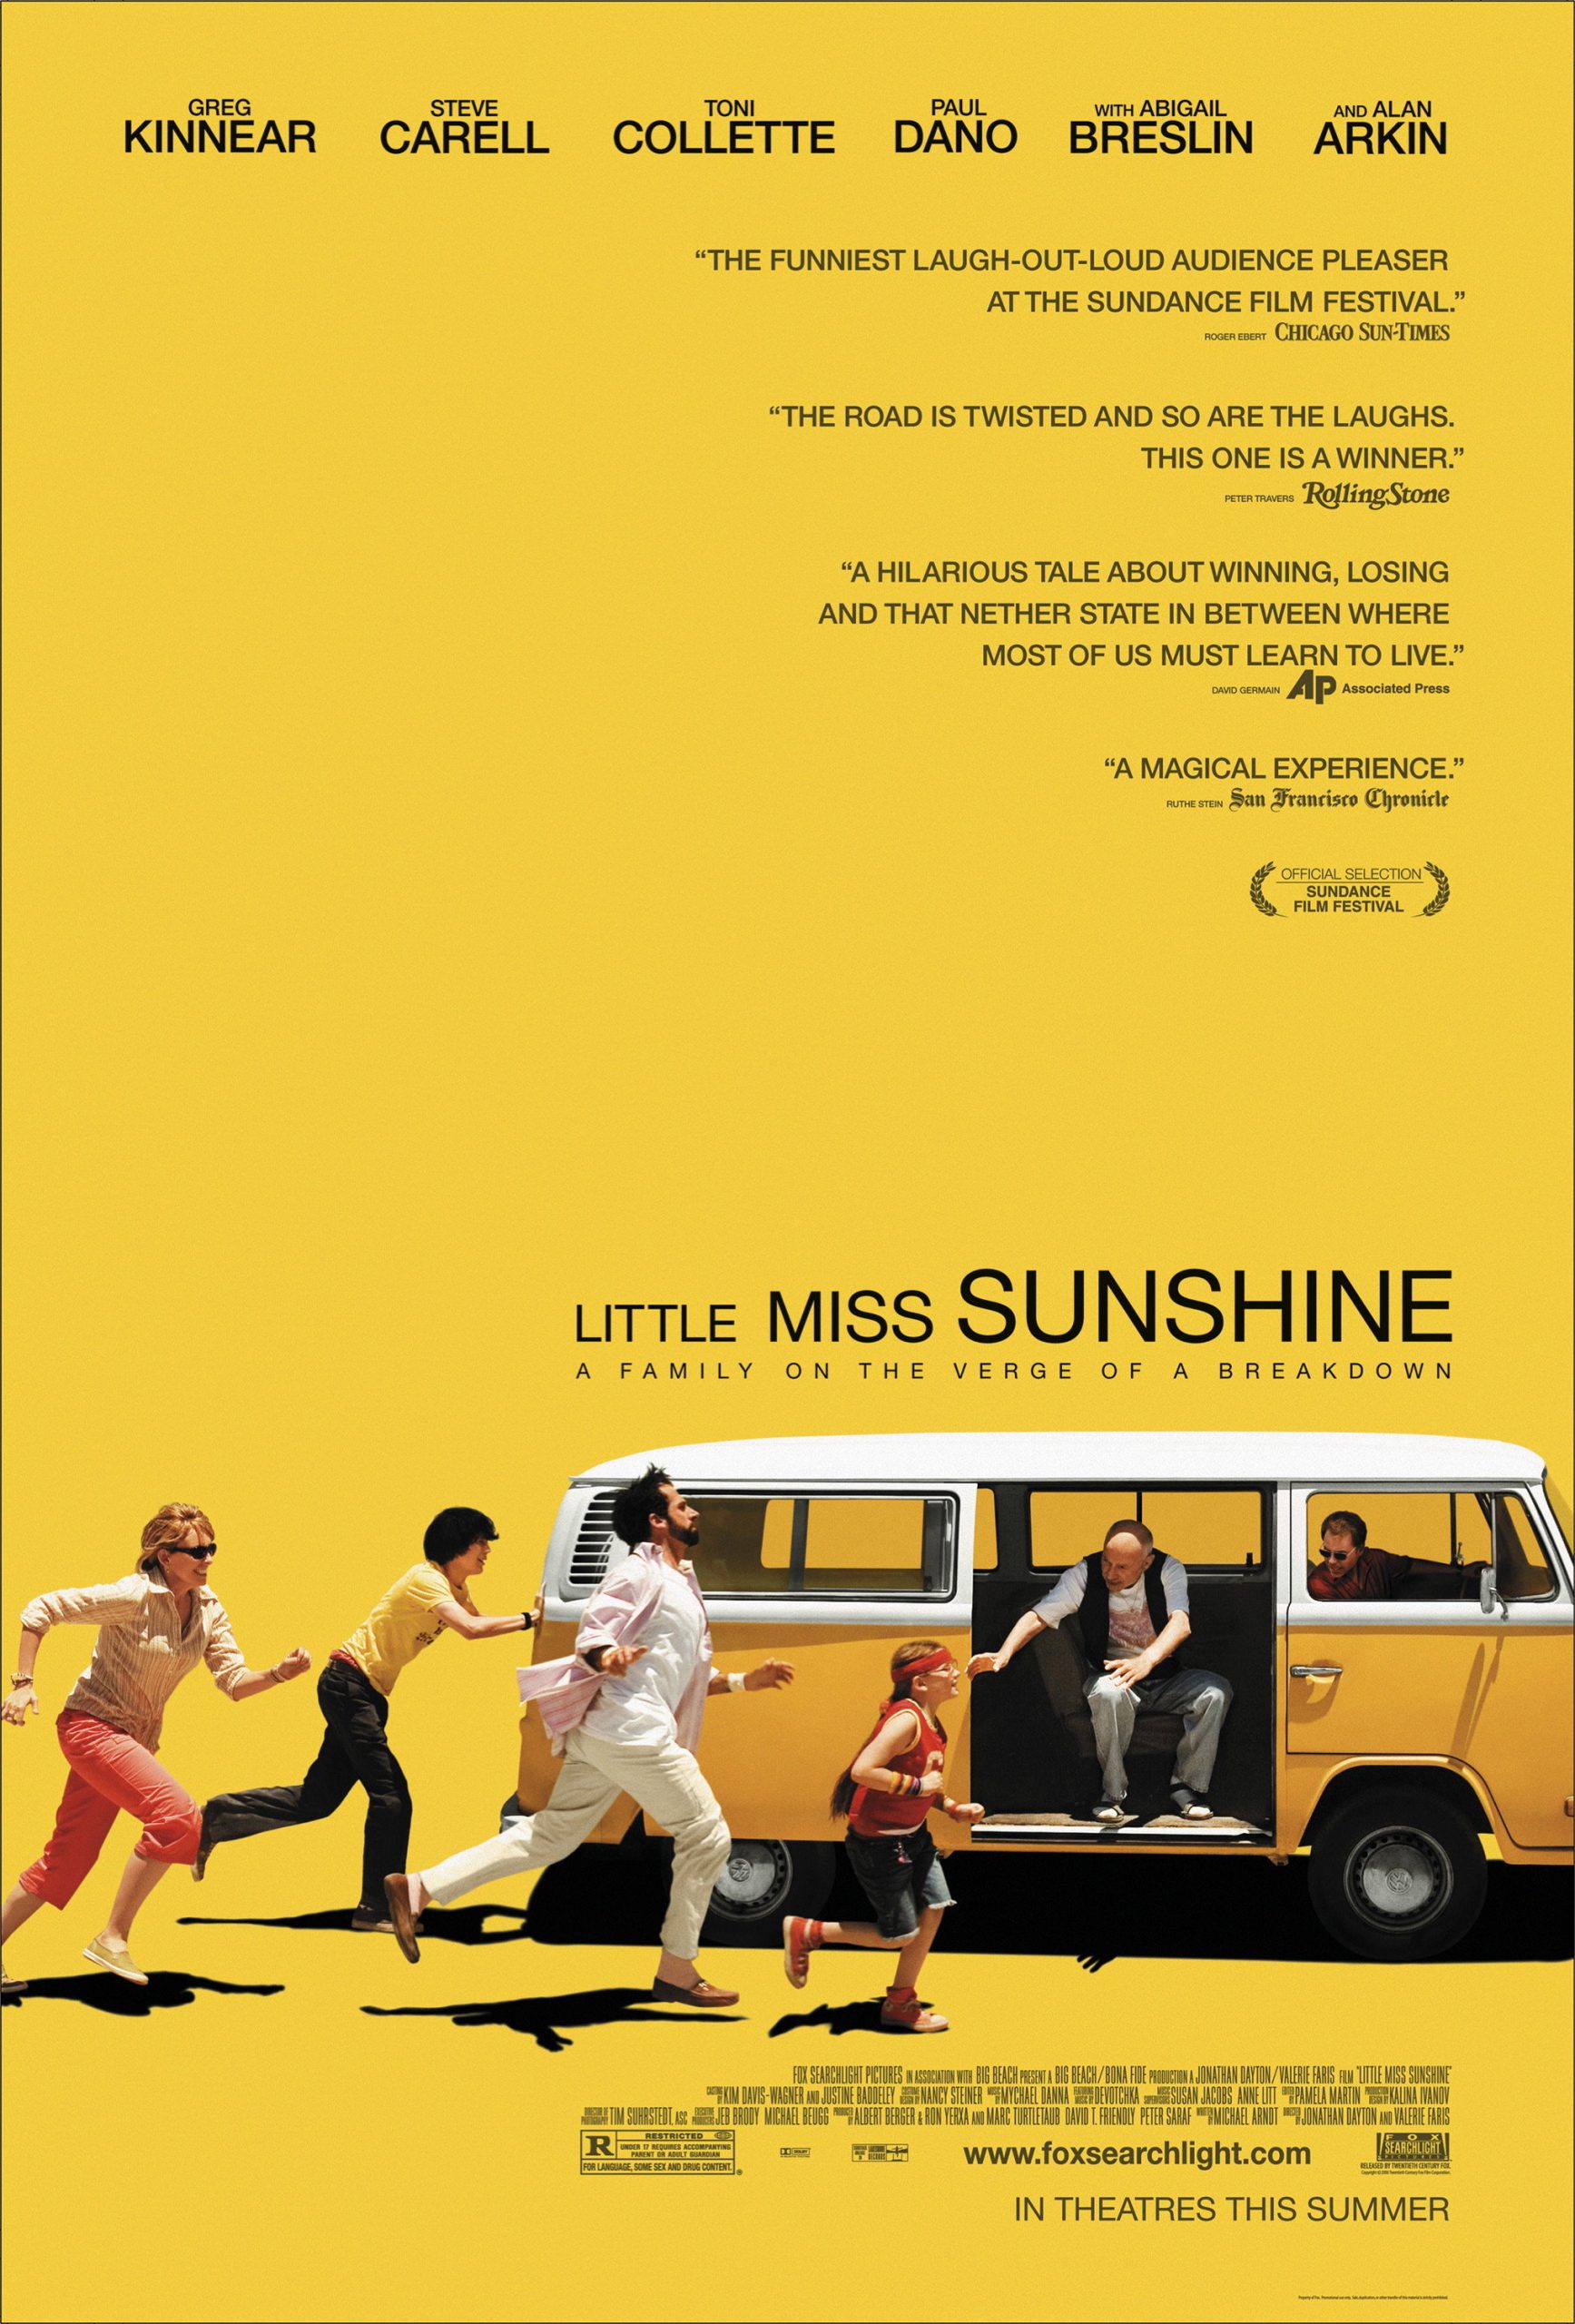 Little Miss Sunshine (2006) ลิตเติ้ล มิสซันไชนื นางงามตัวน้อย ร้อยสายใยรัก Steve Carell